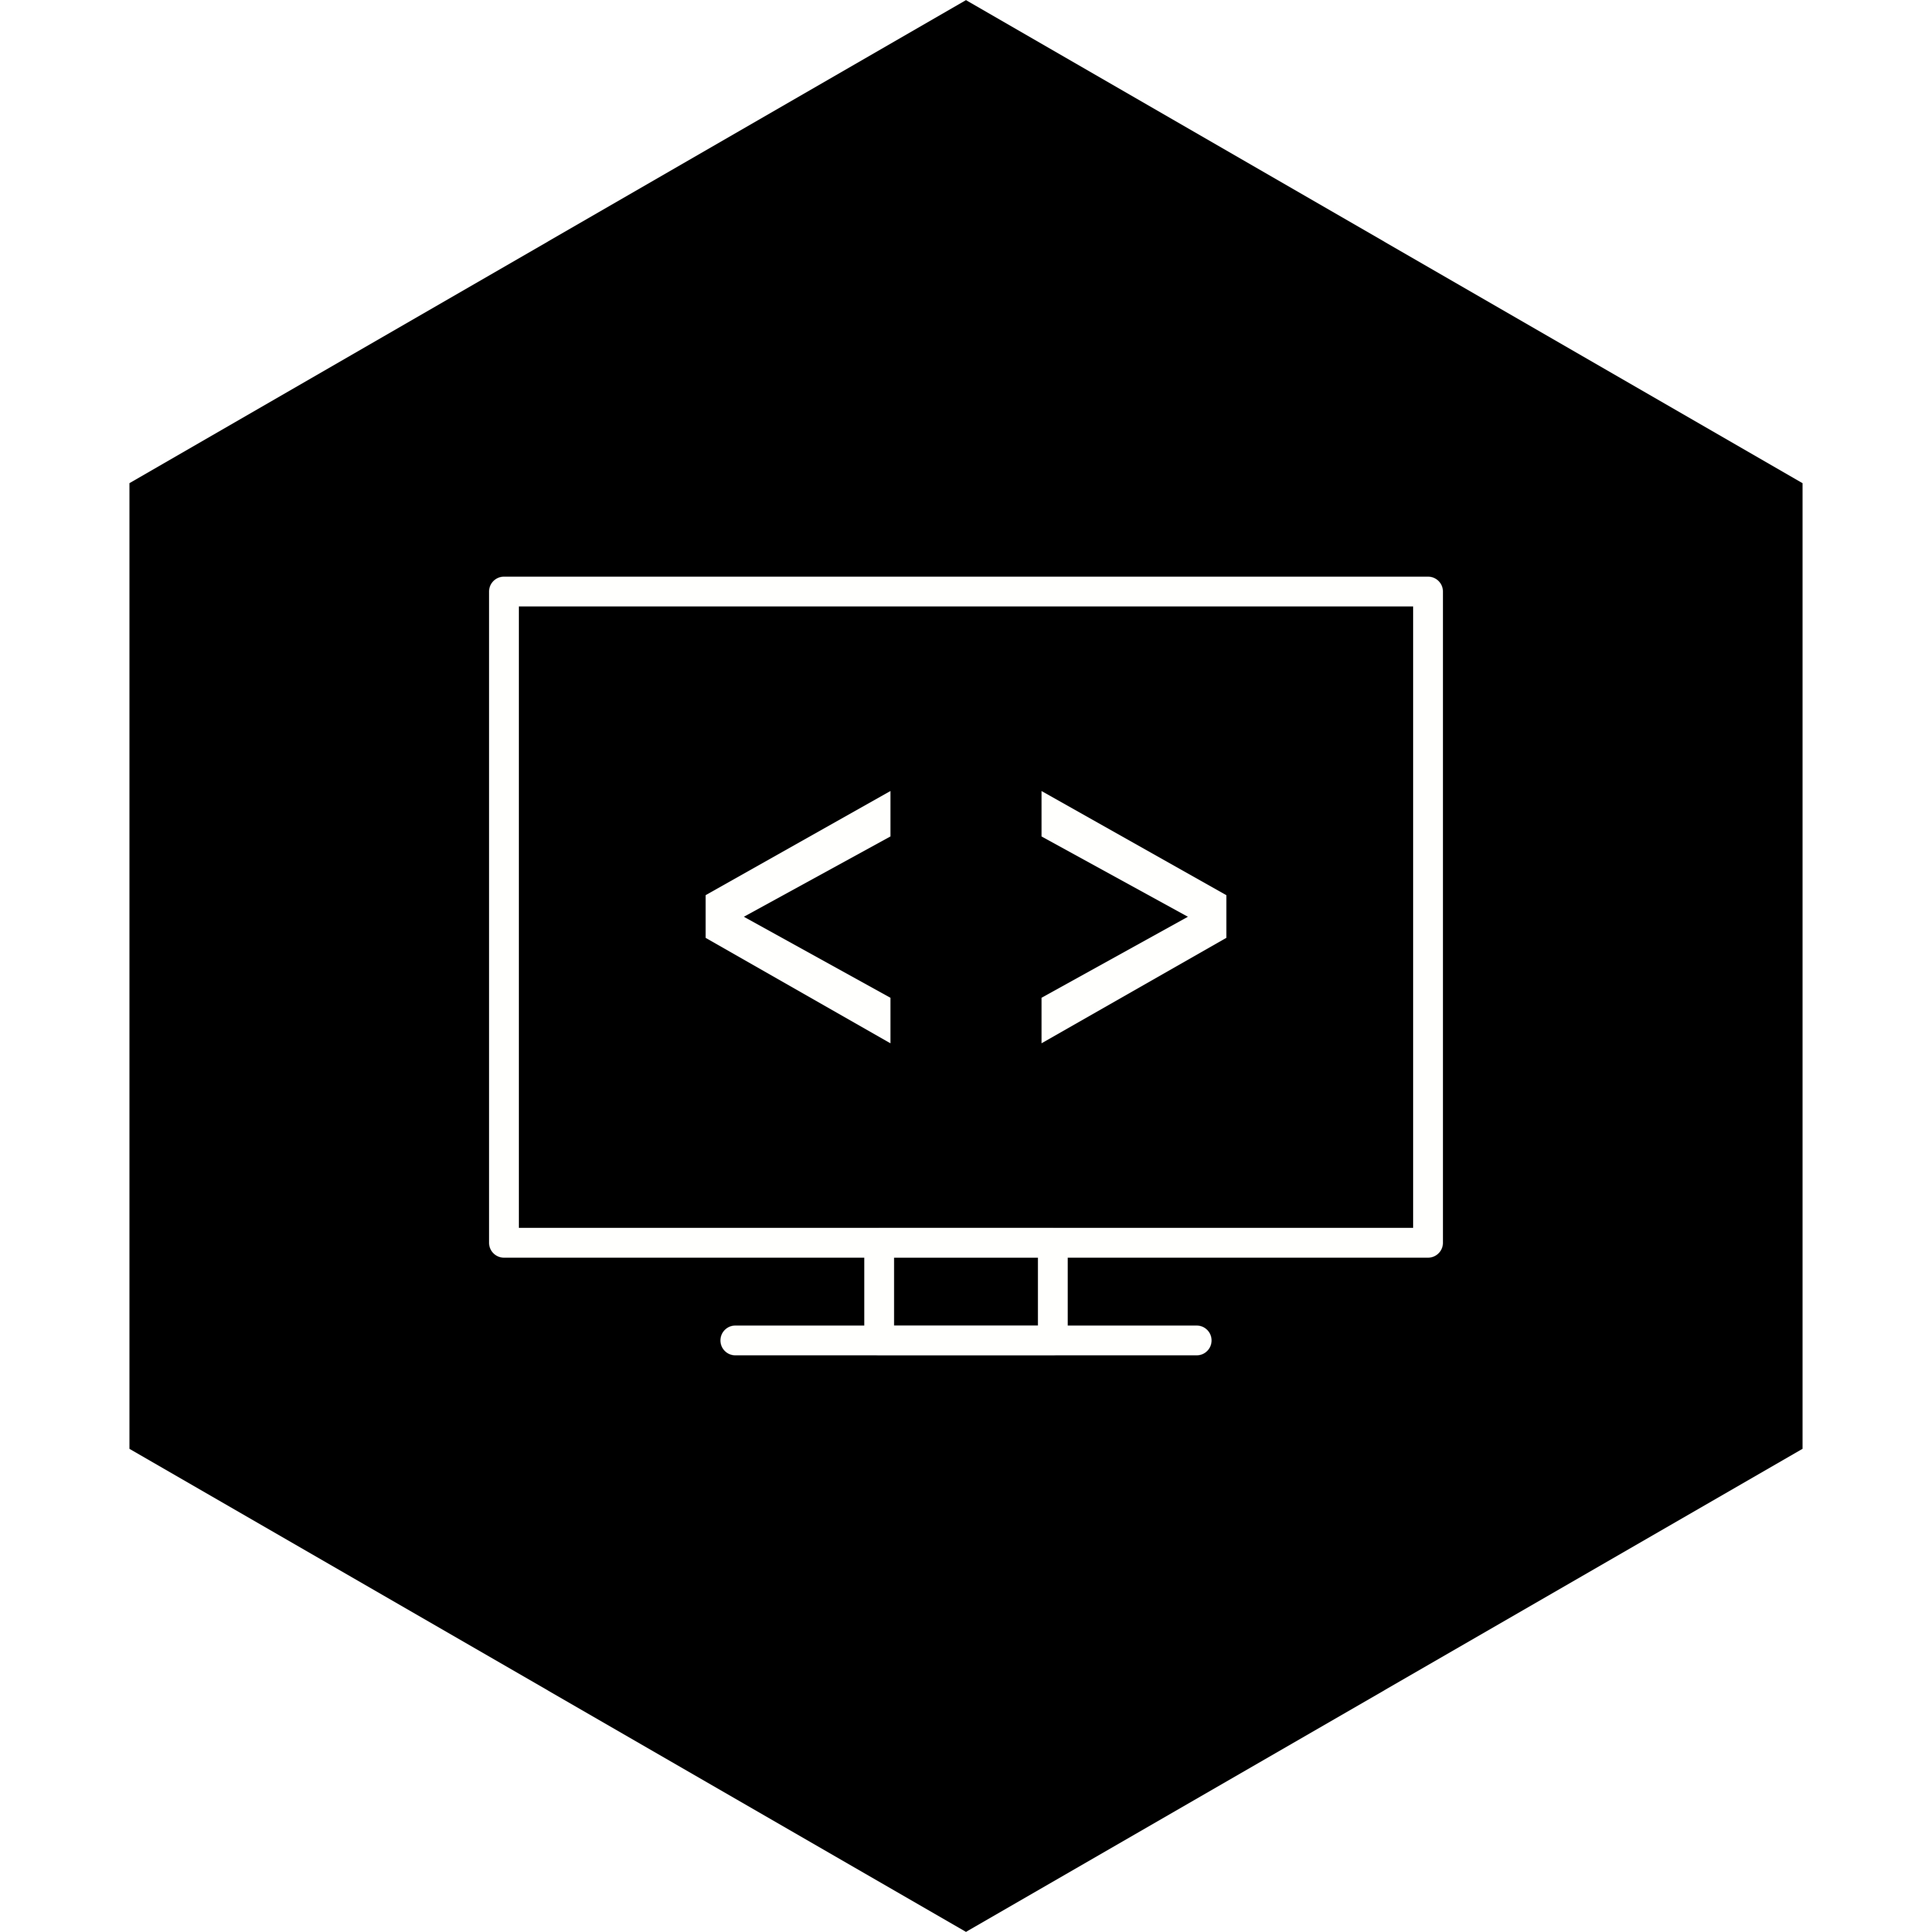 Code icon. Код иконка. Значок кодера. Программирование иконка. Программирование логотип.